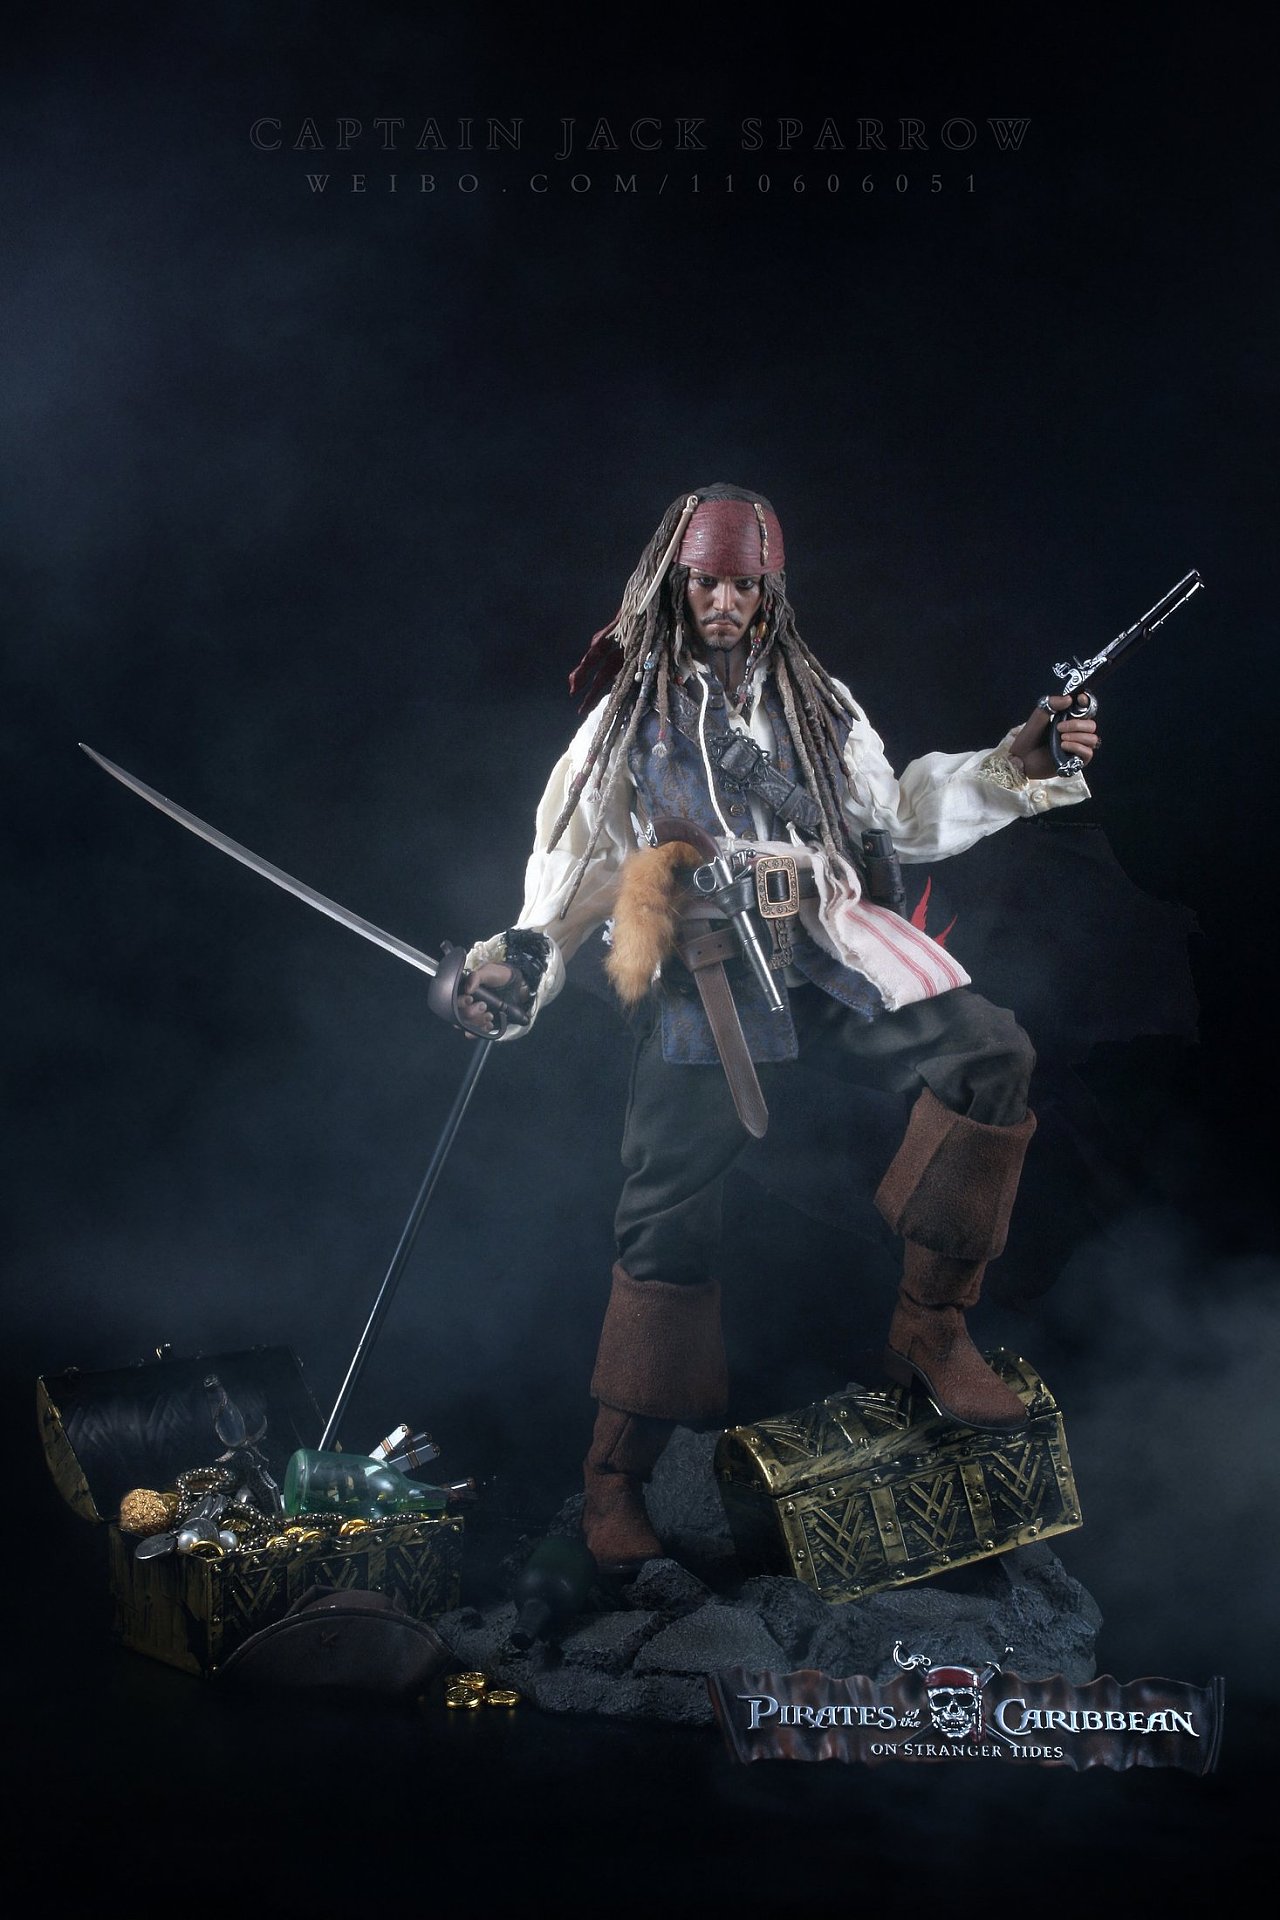 永远的杰克船长！约翰尼德普的加勒比海盗永恒的经典啊-直播吧zhibo8.cc